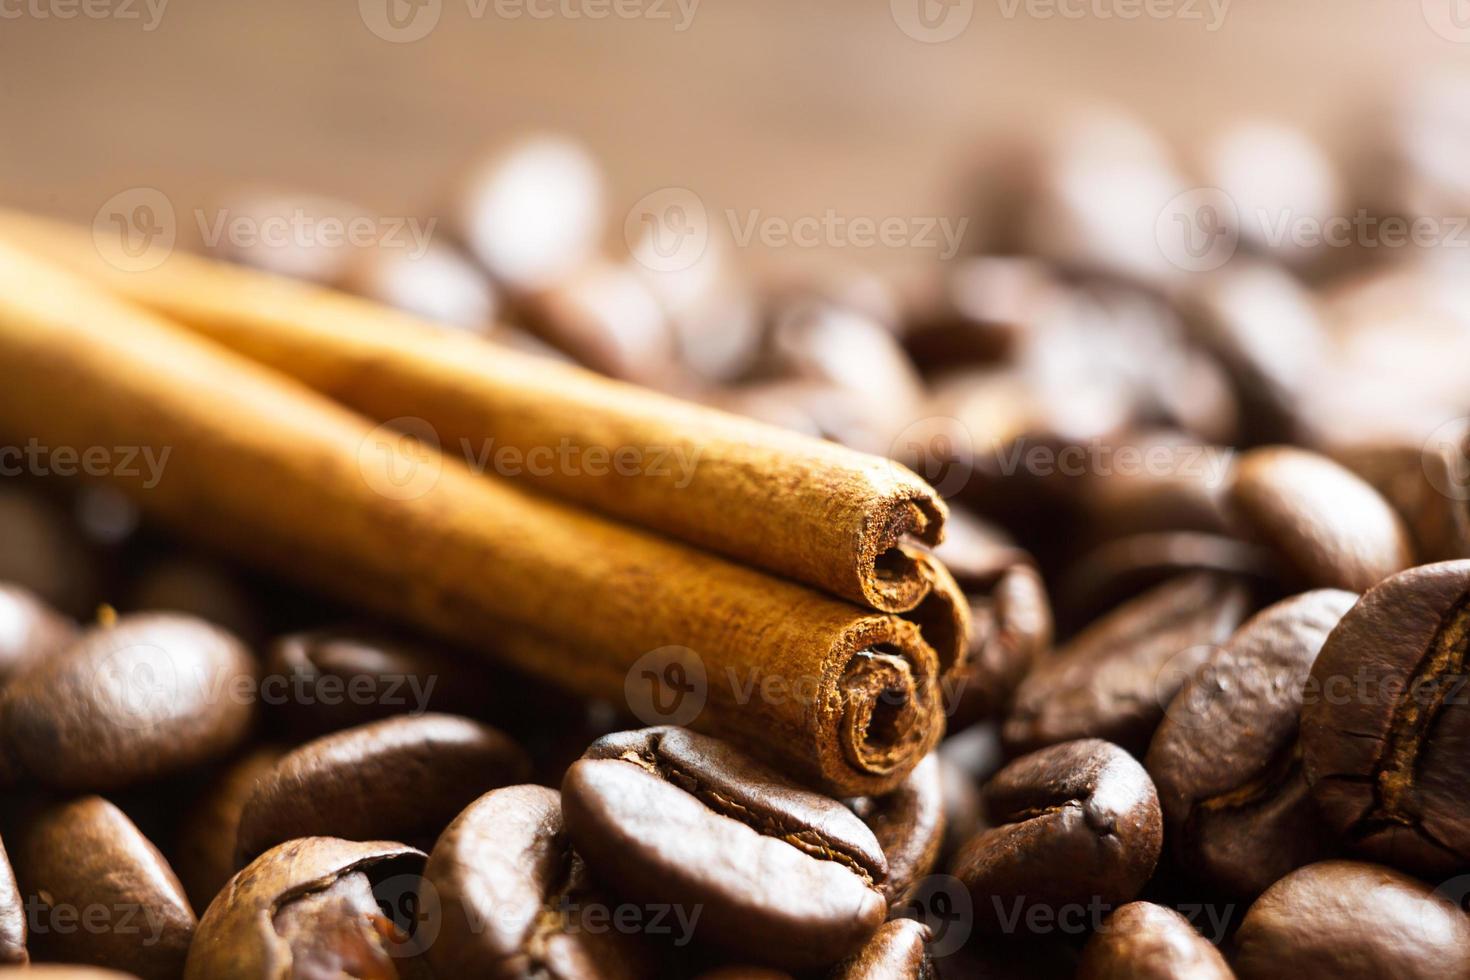 un bâton de cannelle se trouve sur le gros plan des grains de café torréfiés - arrière-plans macro parfumés. des grains de café arabica bruns sont éparpillés sur la table en bois. copie espace photo